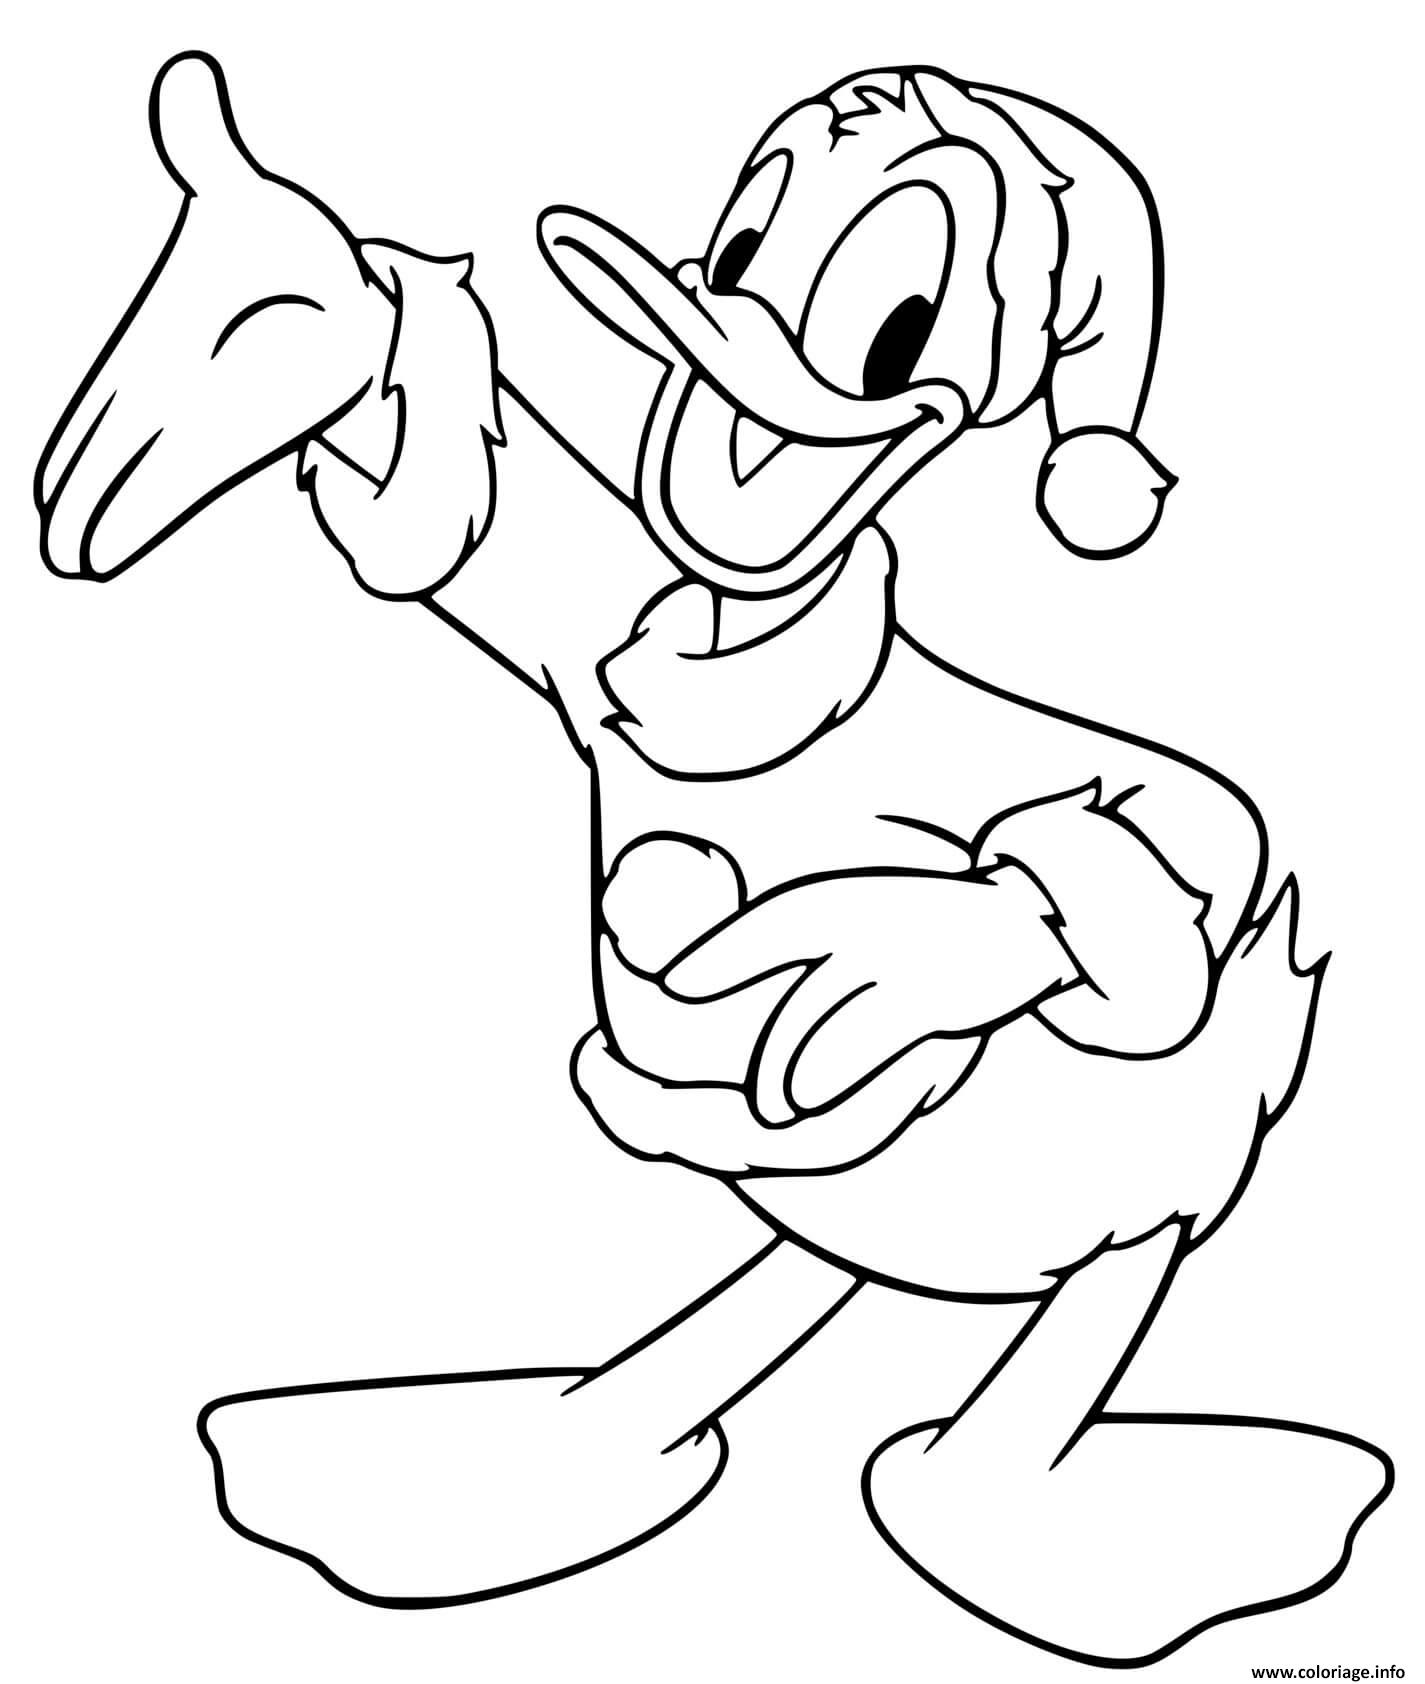 Dessin Donald Duck as Santa Claus Coloriage Gratuit à Imprimer